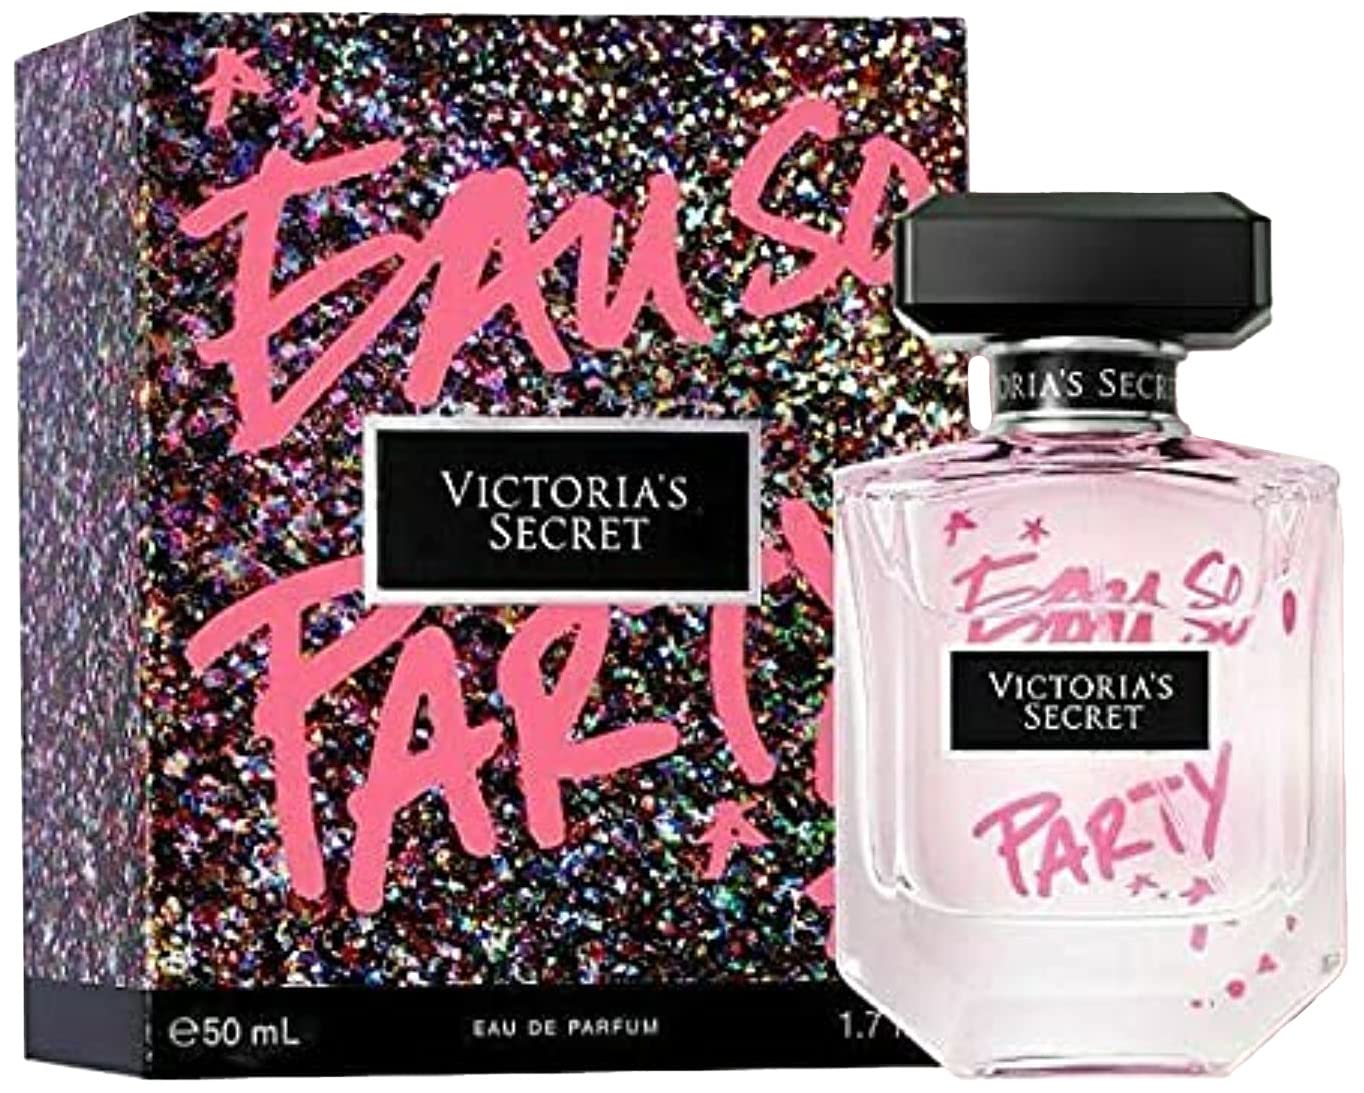 Victoria's Secret Eau So Party Eau de Parfum 50ml Spray For Her